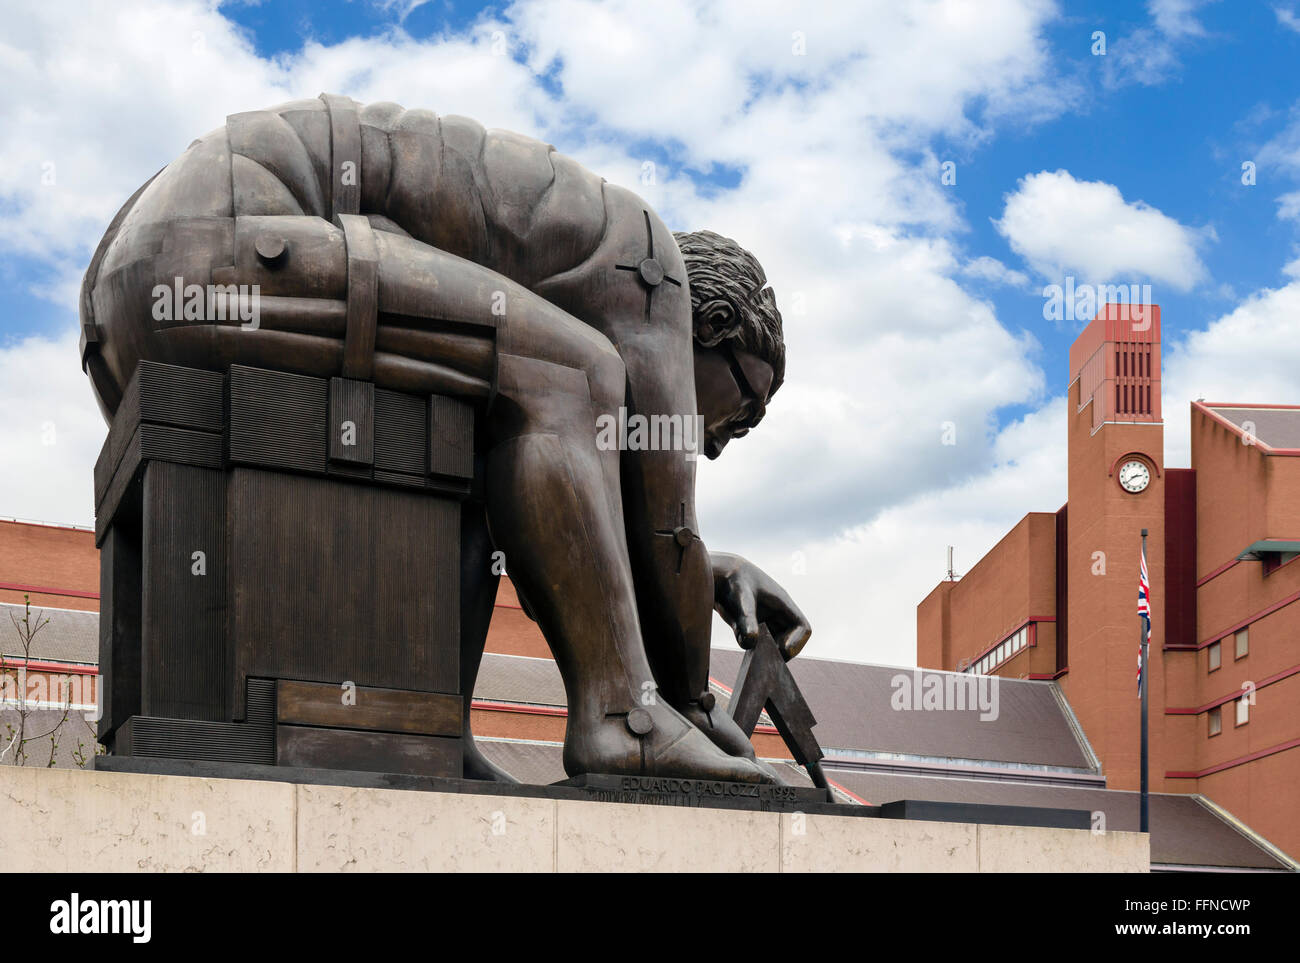 La estatua de Eduardo Paolozzi "Newton" fuera de la Biblioteca Británica, en Londres, Inglaterra, Reino Unido. Foto de stock